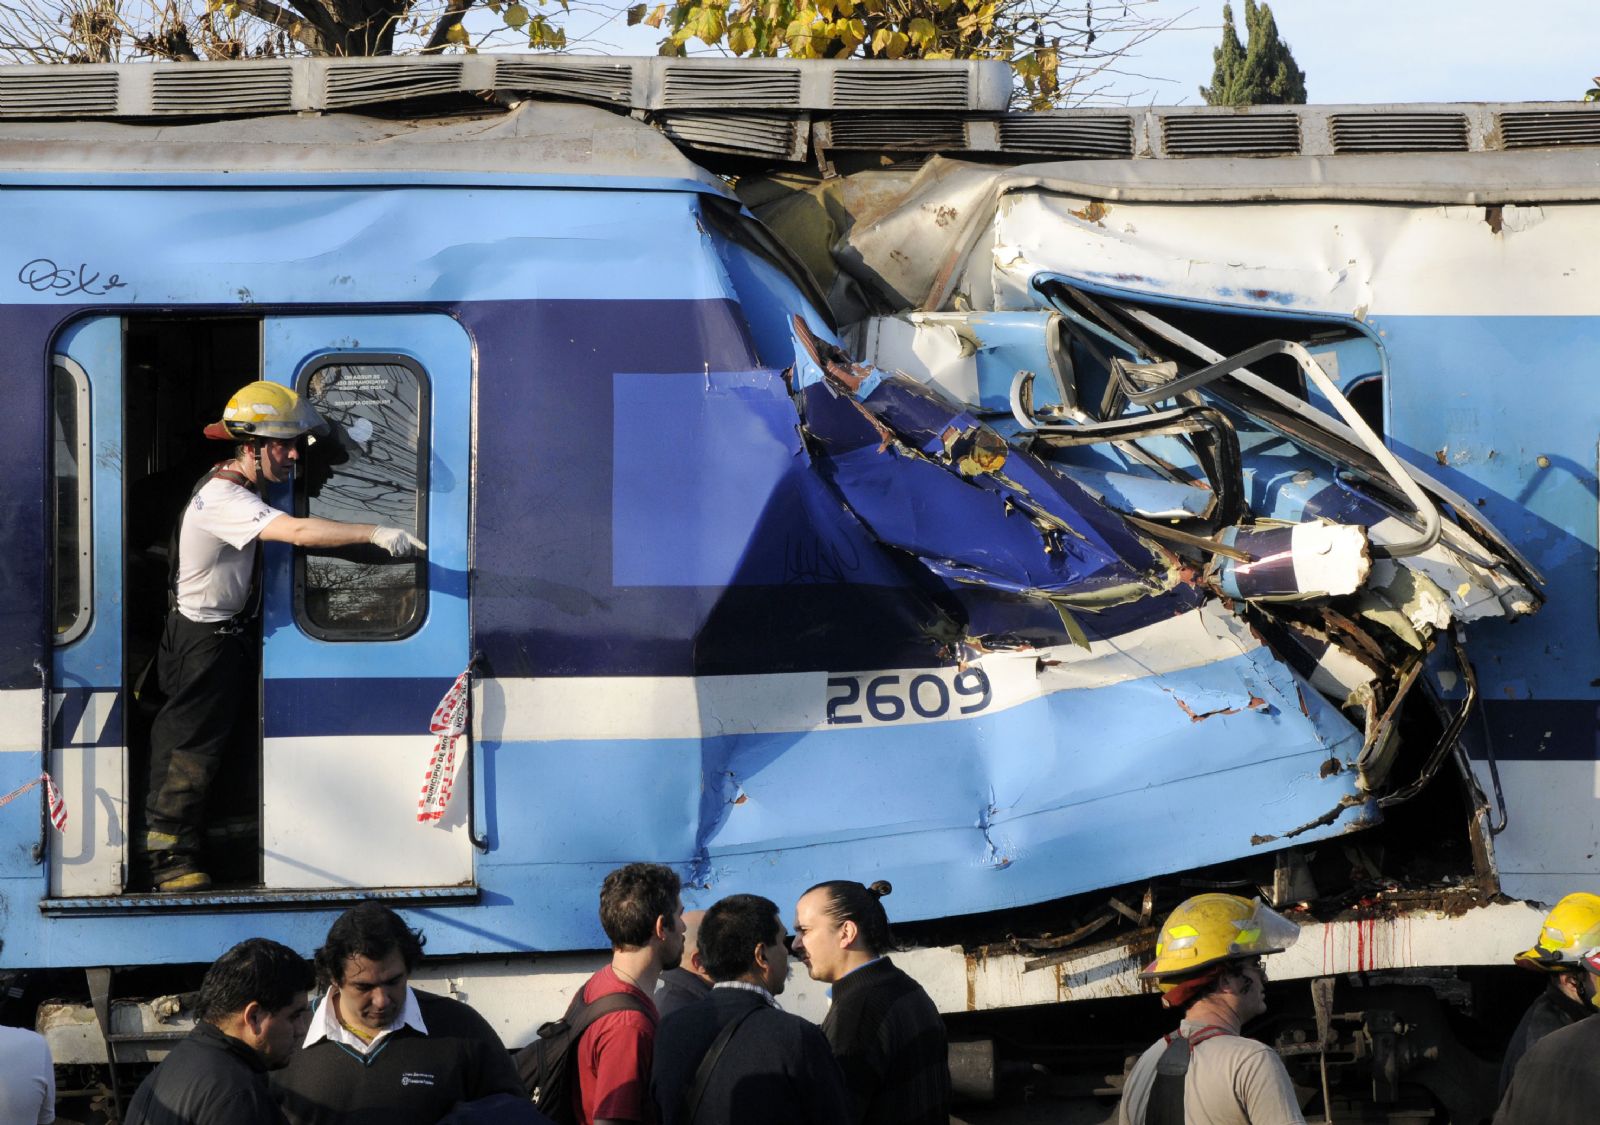 El exministro de Planificación es acusado de defraudación y estrago culposo por su supuesta responsabilidad en tragedia ferroviaria en Argentina.